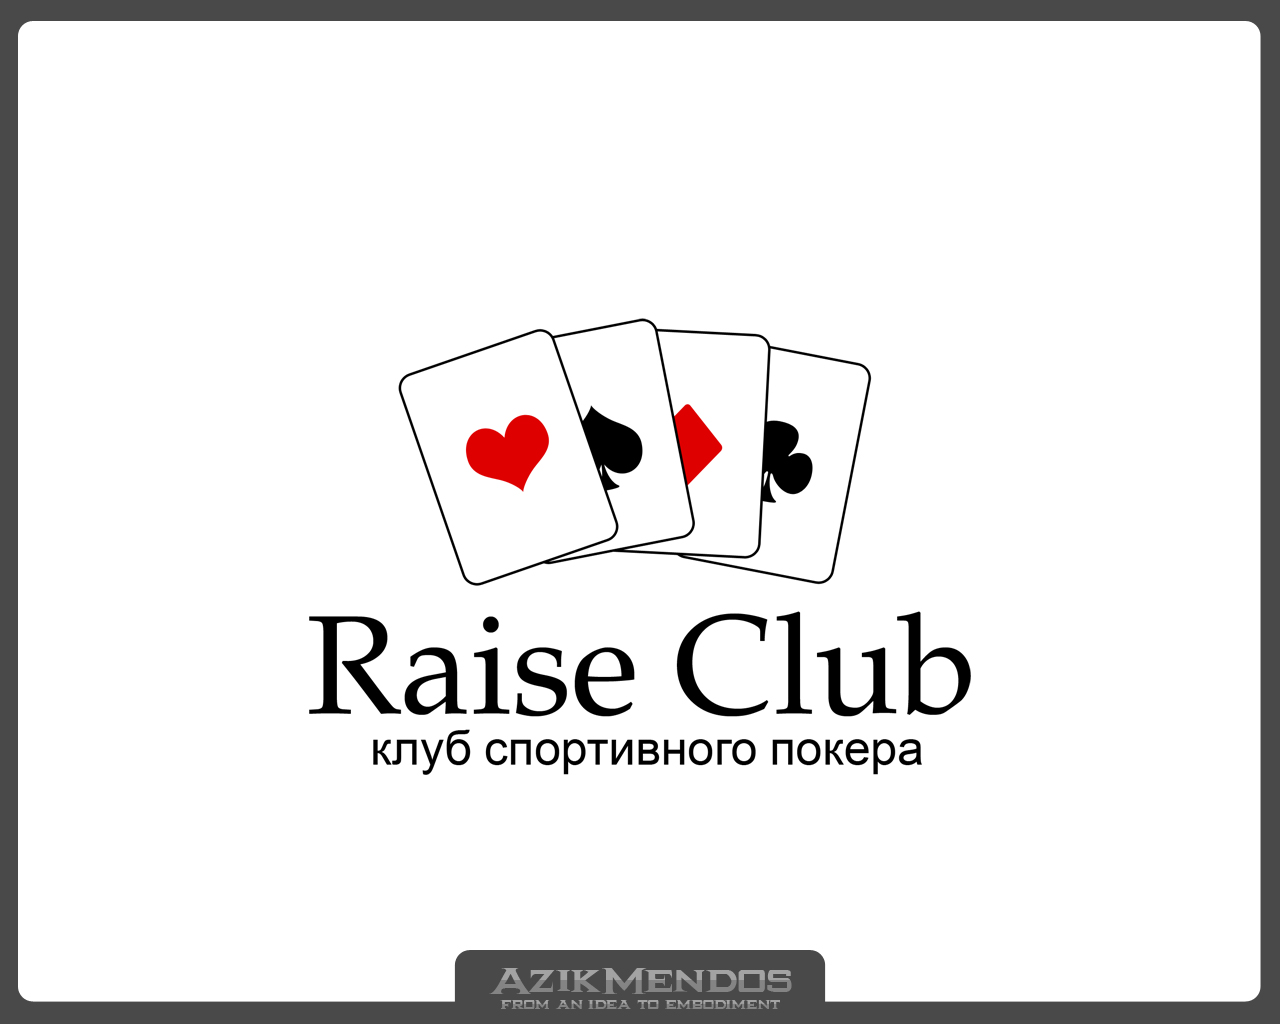 Raise Club